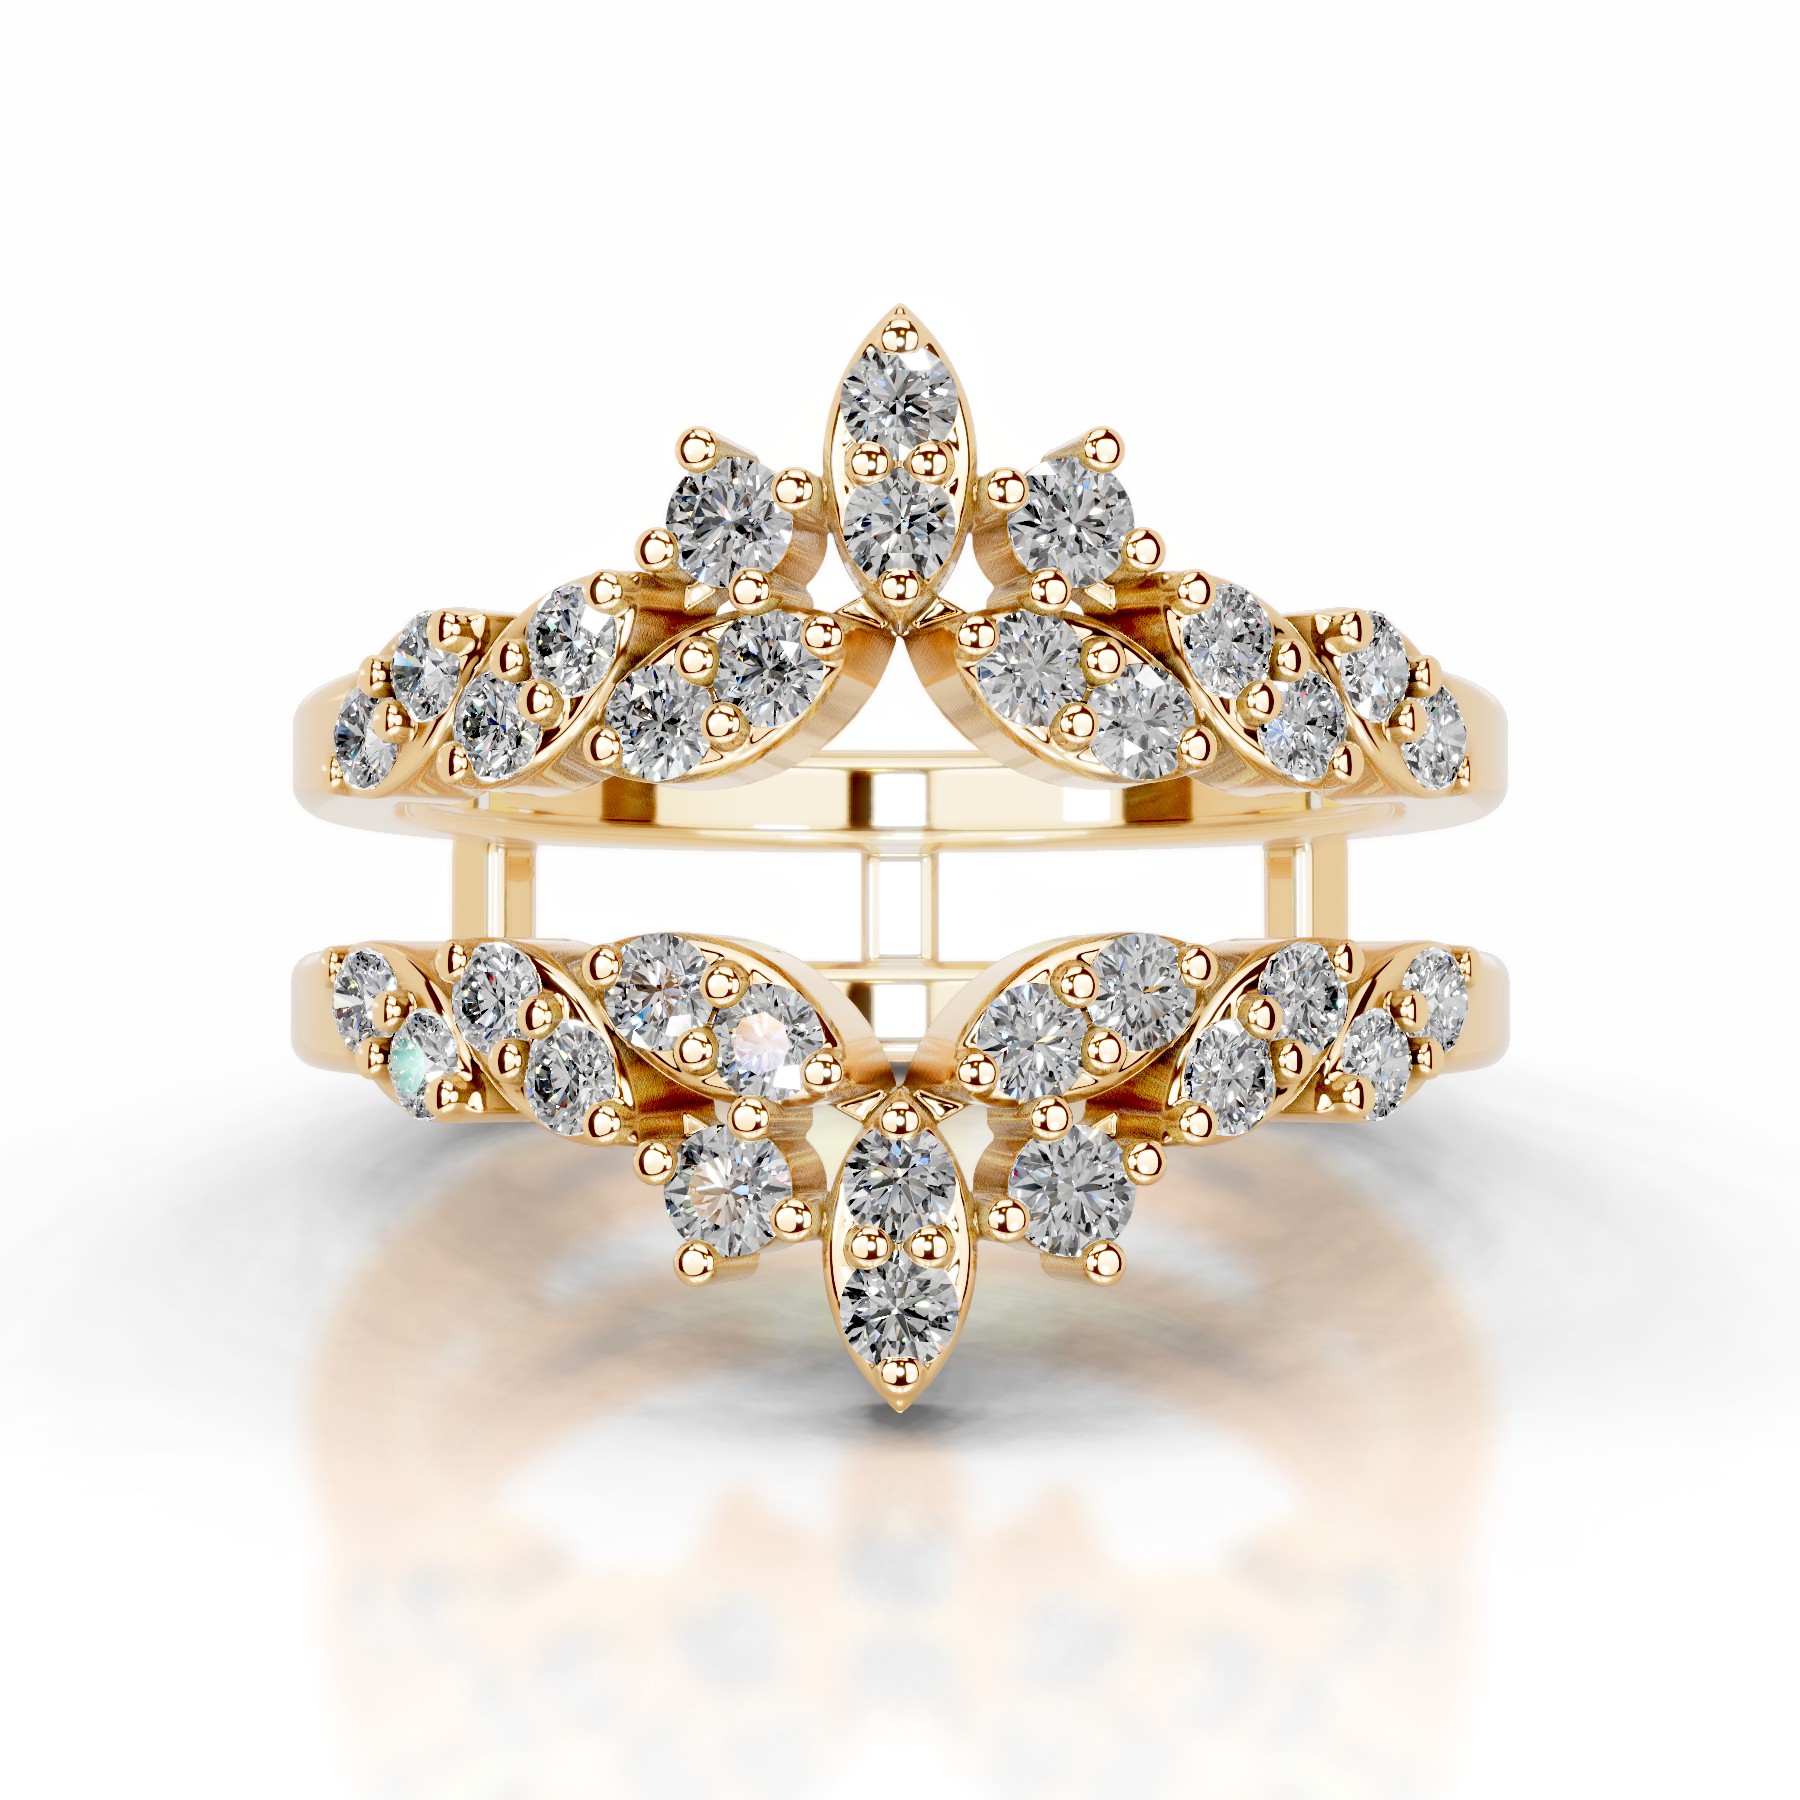 Nikita Diamond Wedding Ring   (0.70 Carat) -18K Yellow Gold